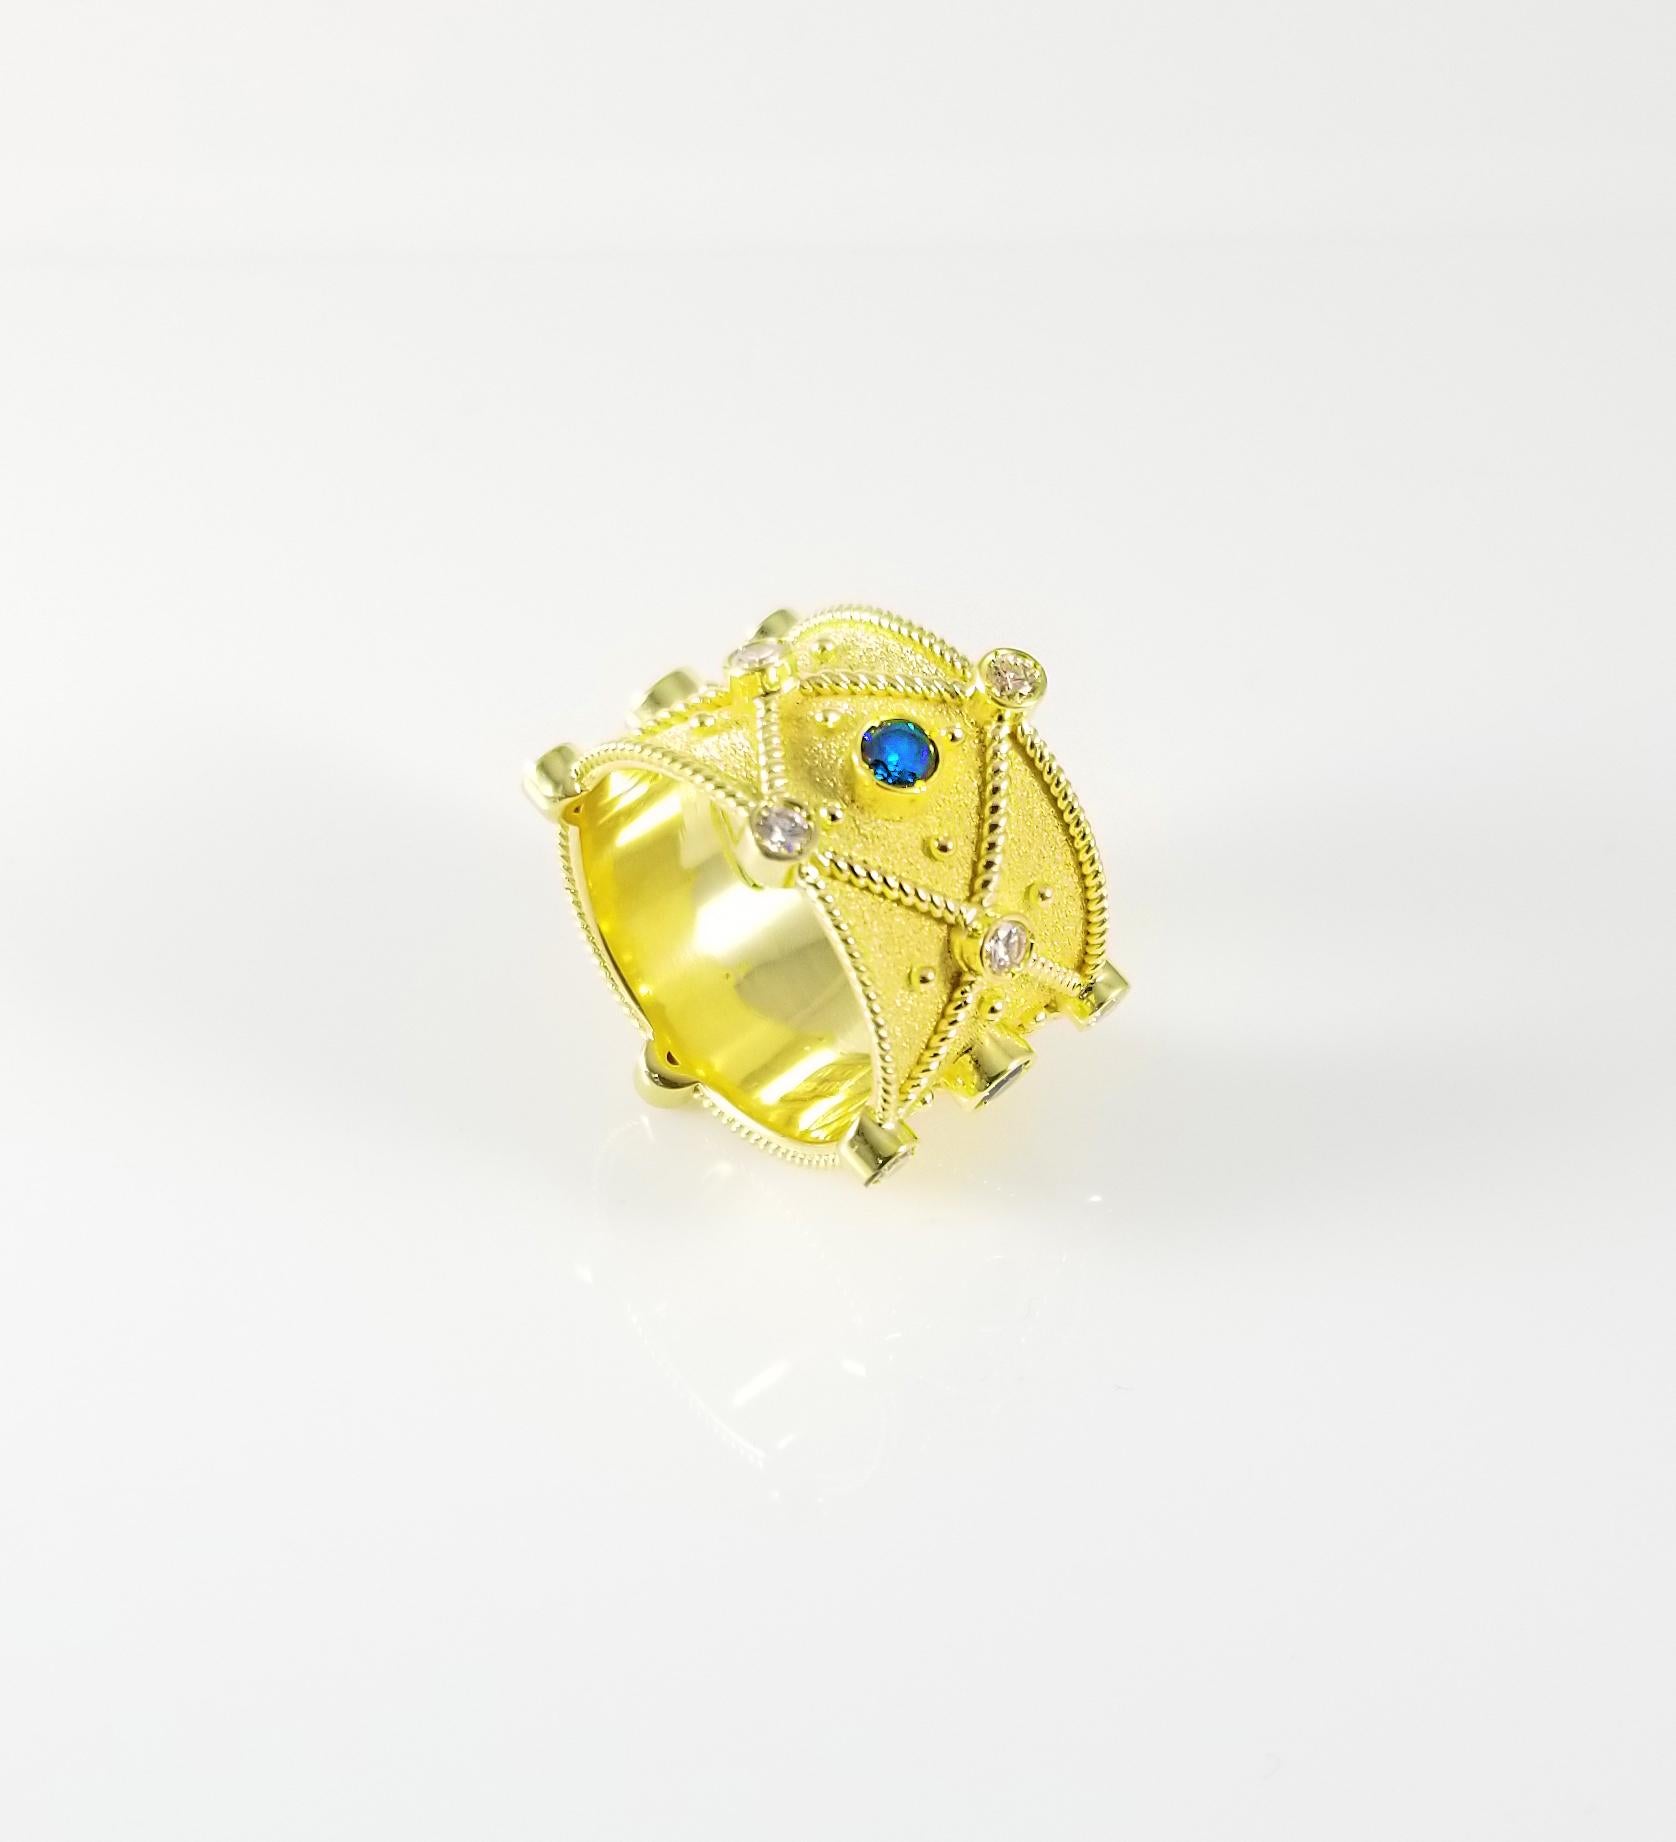 S.Georgios Designer-Ring, handgefertigt aus massivem 18 Karat Gelbgold, ist rundum mikroskopisch mit Goldperlen und -drähten verziert und hat einen einzigartigen Samt-Look auf dem Hintergrund. Dieses wunderschöne Stück besteht aus 4 blauen Diamanten